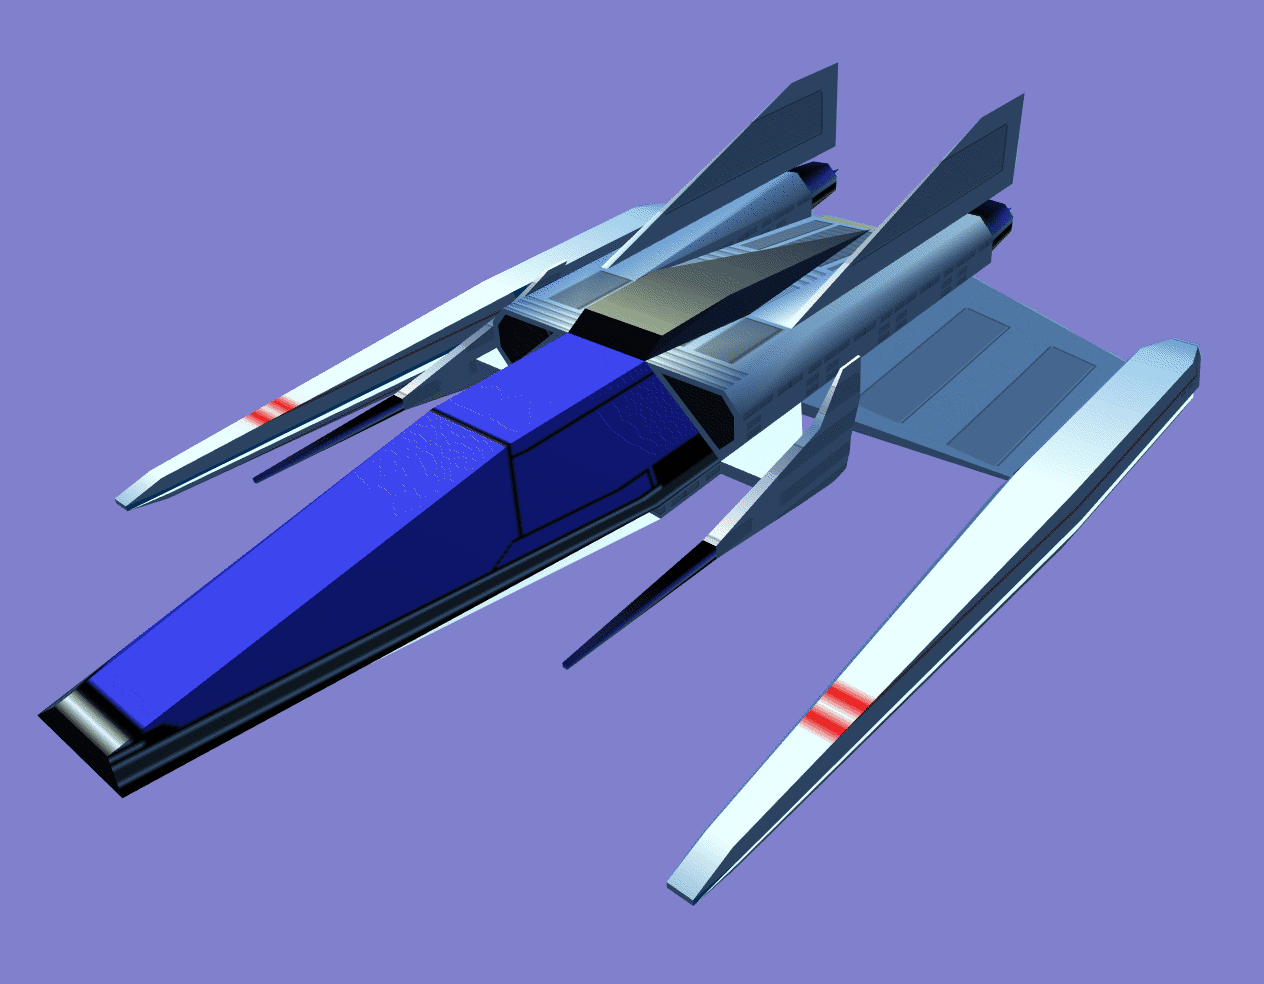 Spacecraft Model in OpenFlight Format